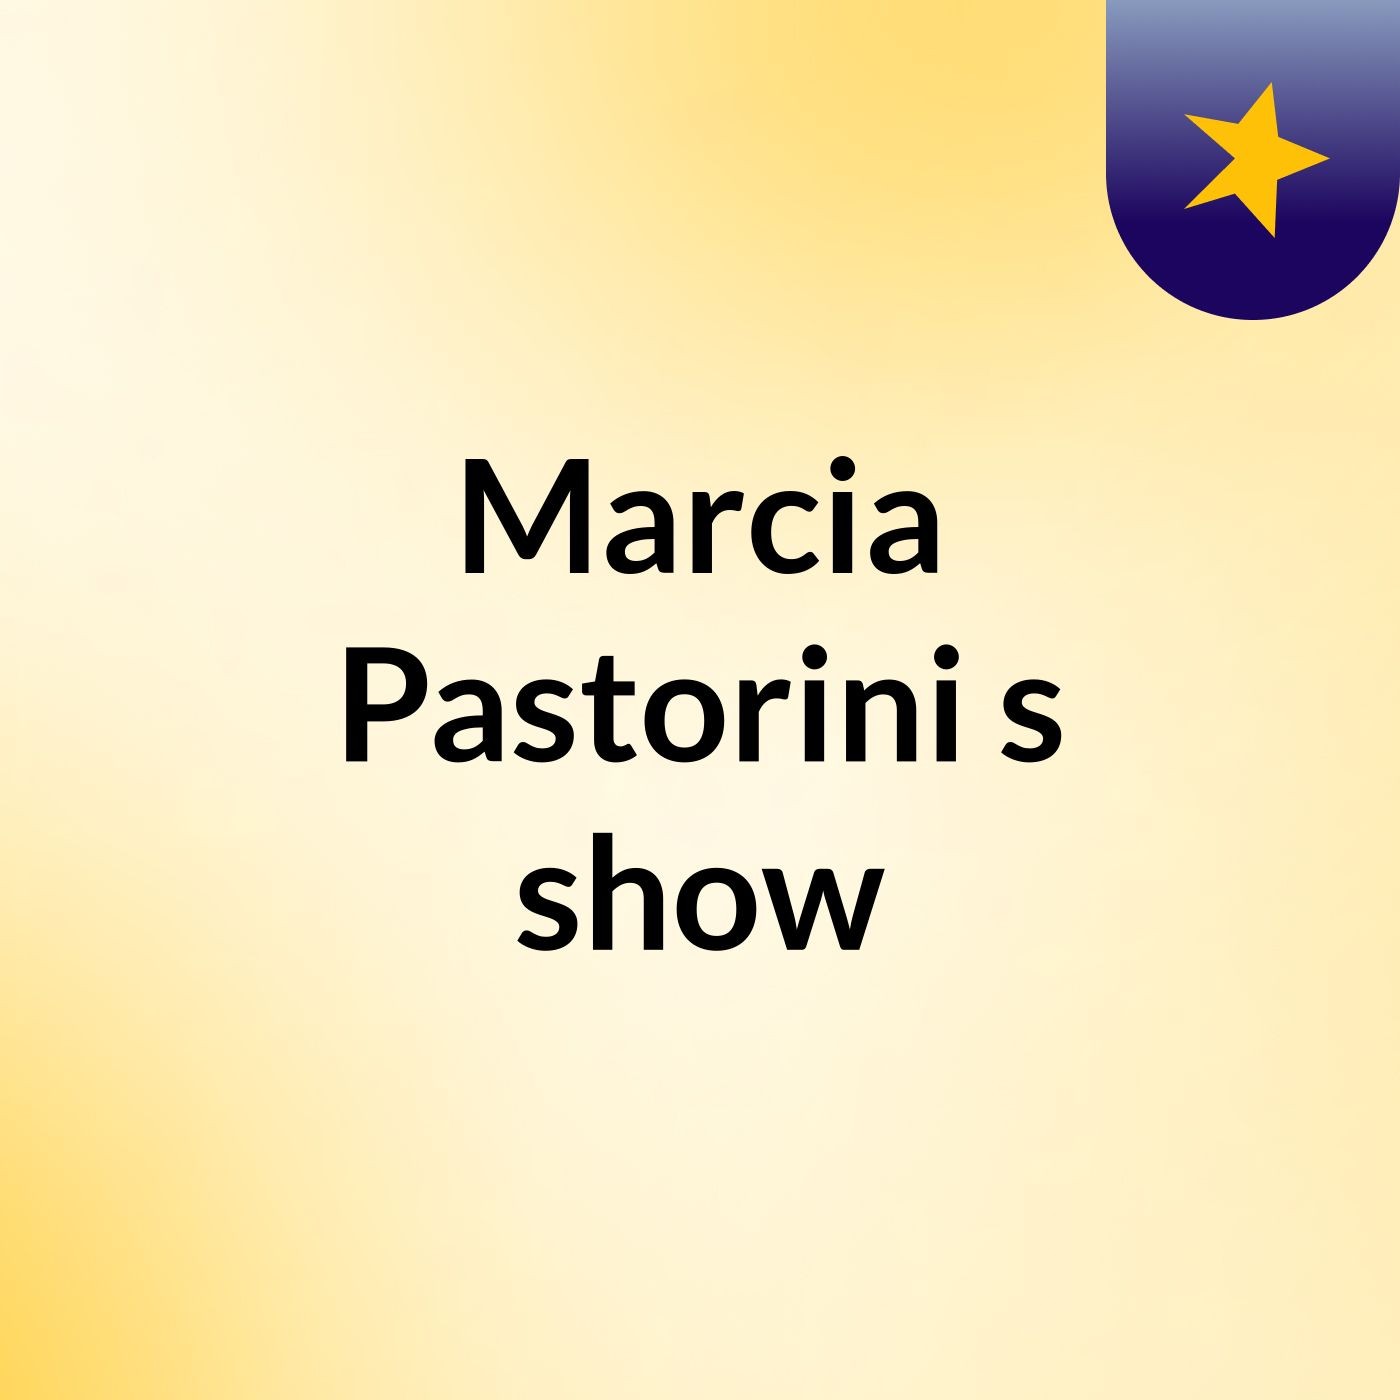 Marcia Pastorini's show